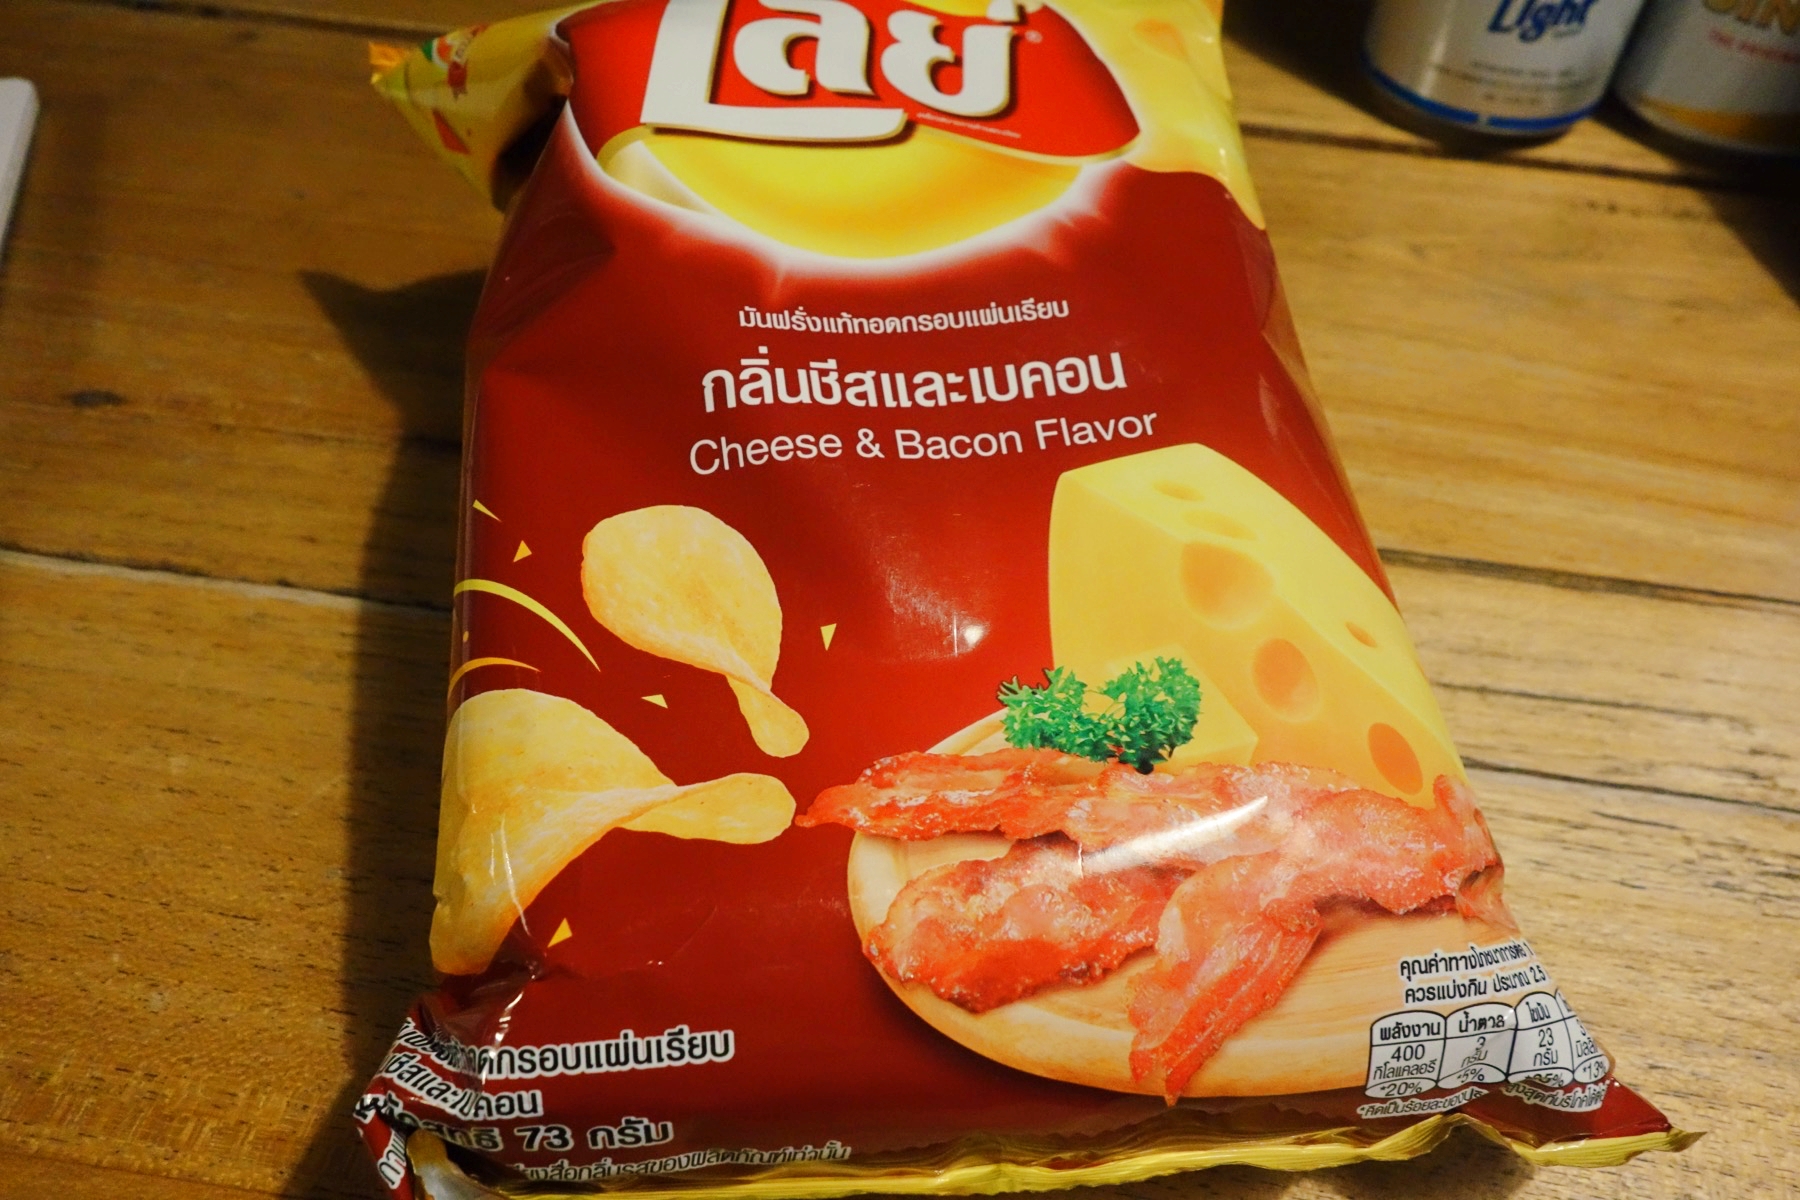 タイで買ったチップス